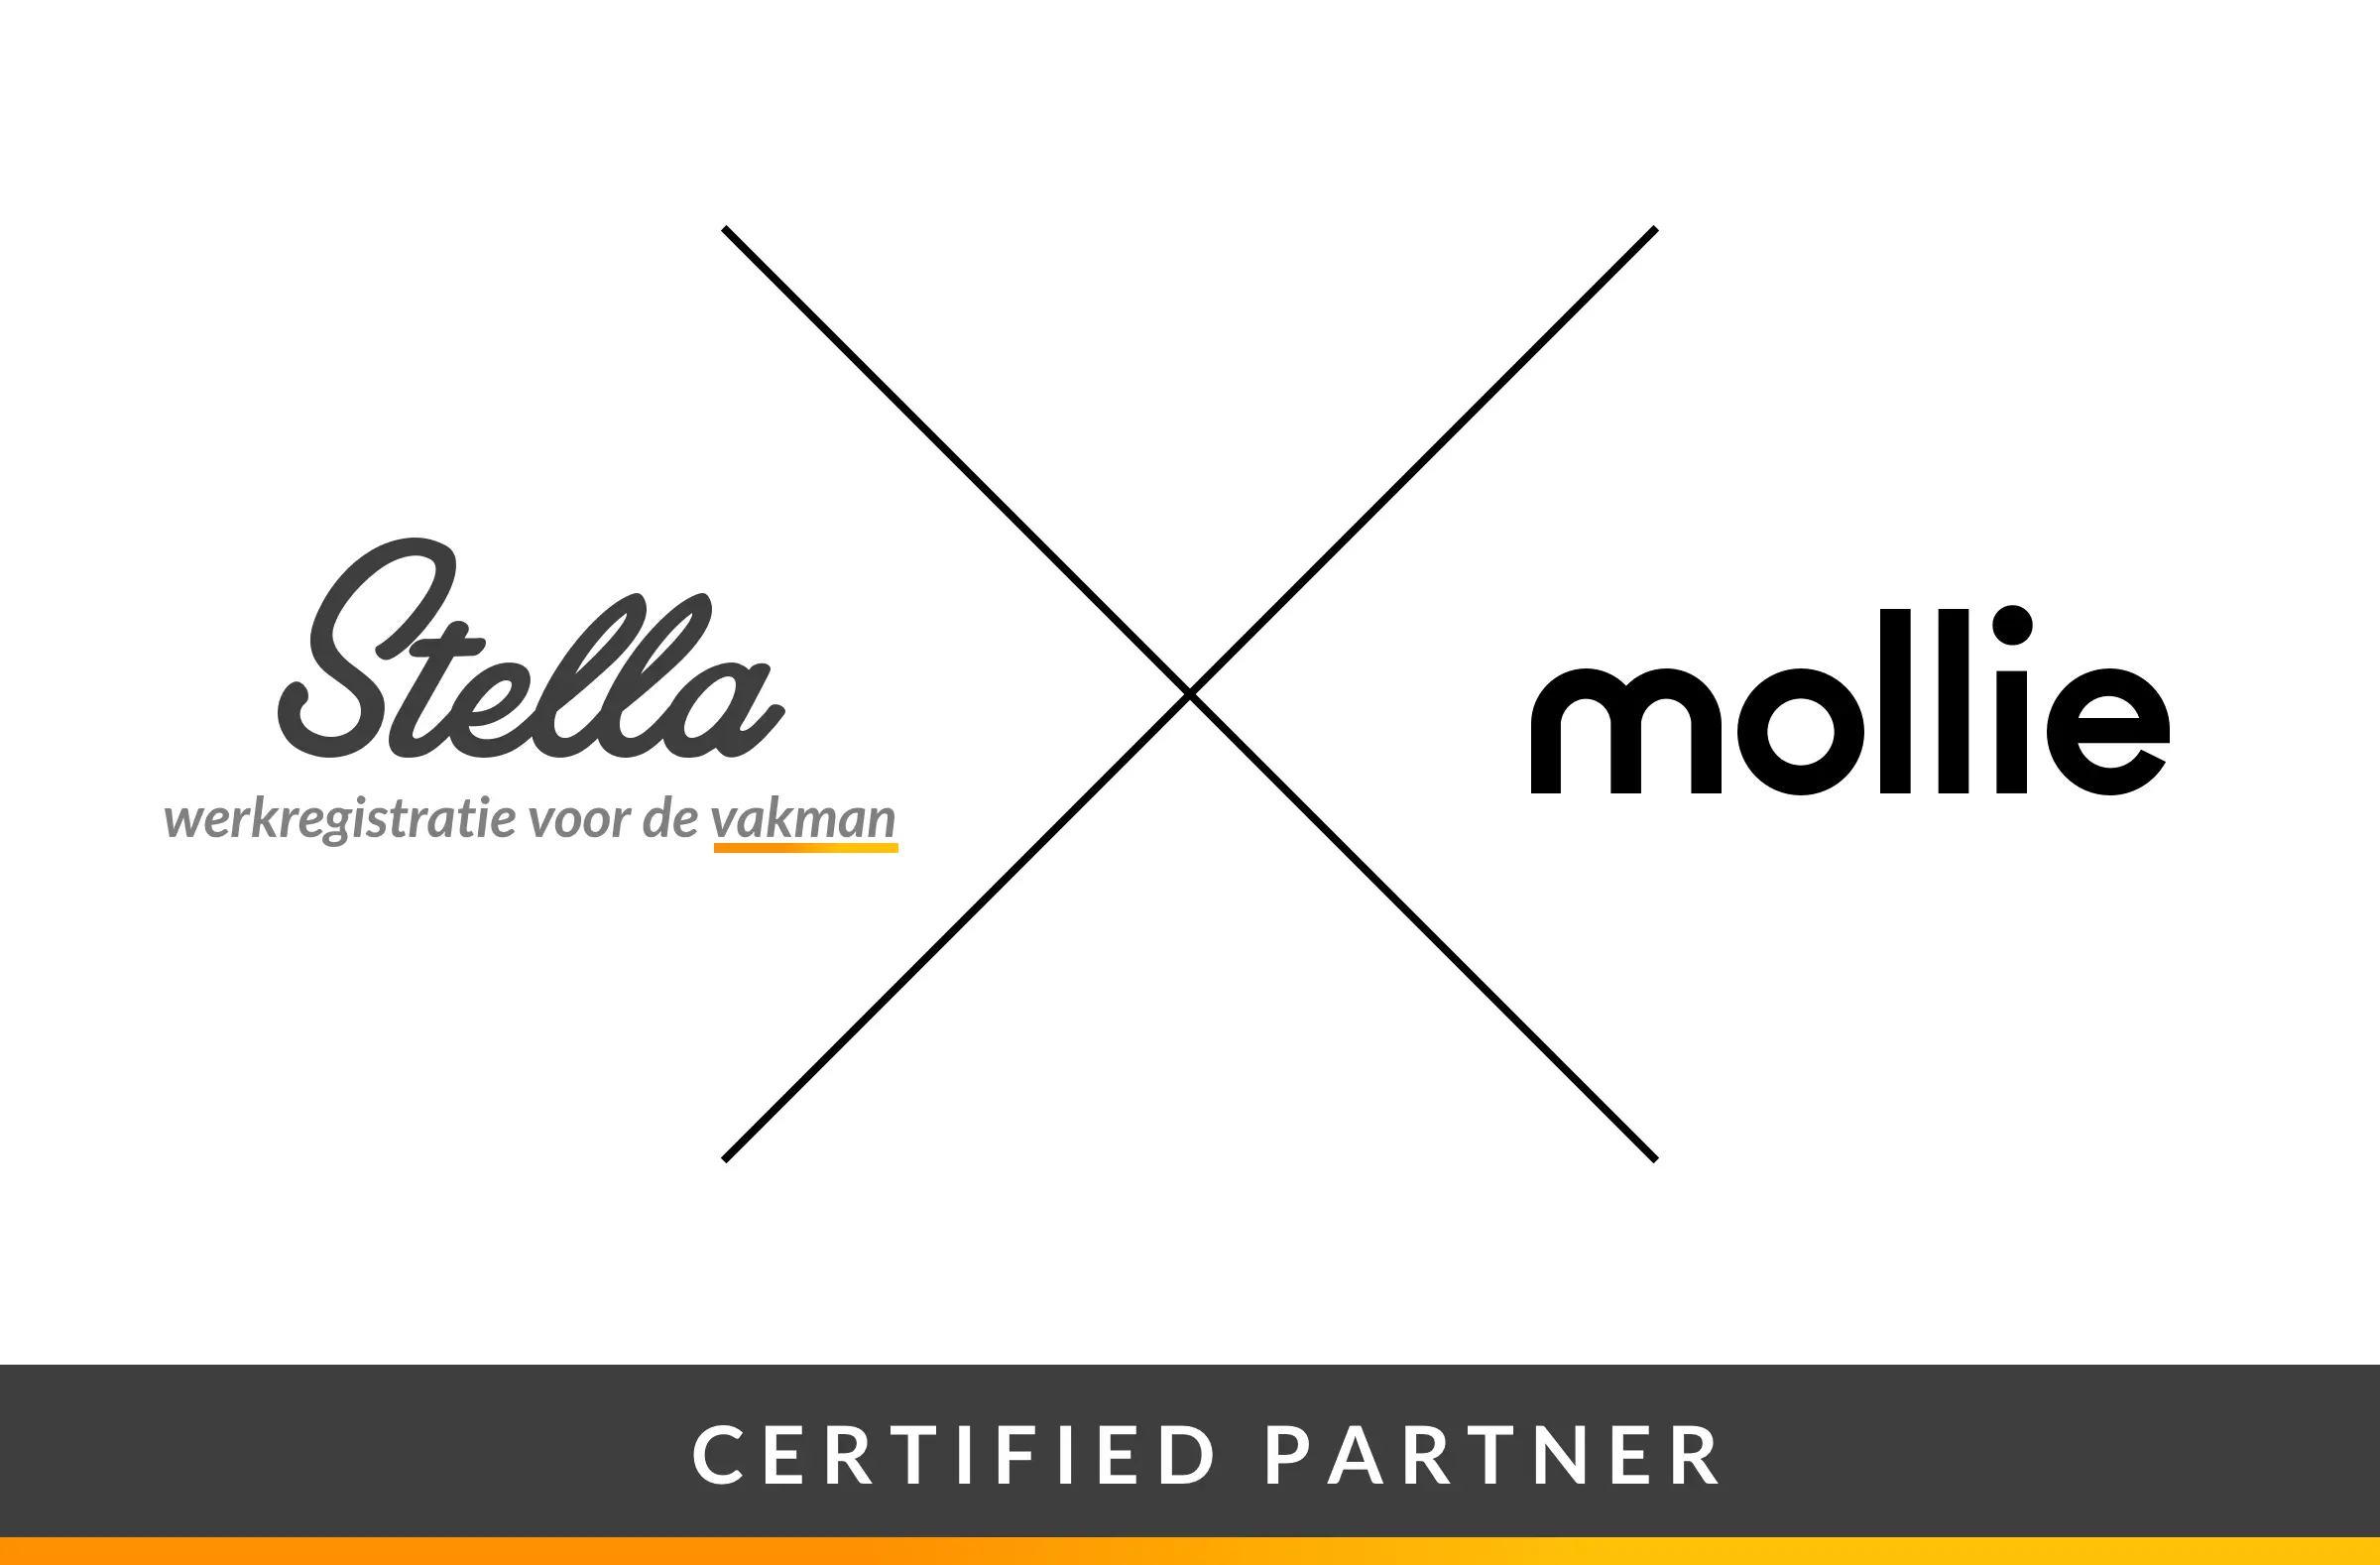 Stella is Certified partner van Mollie